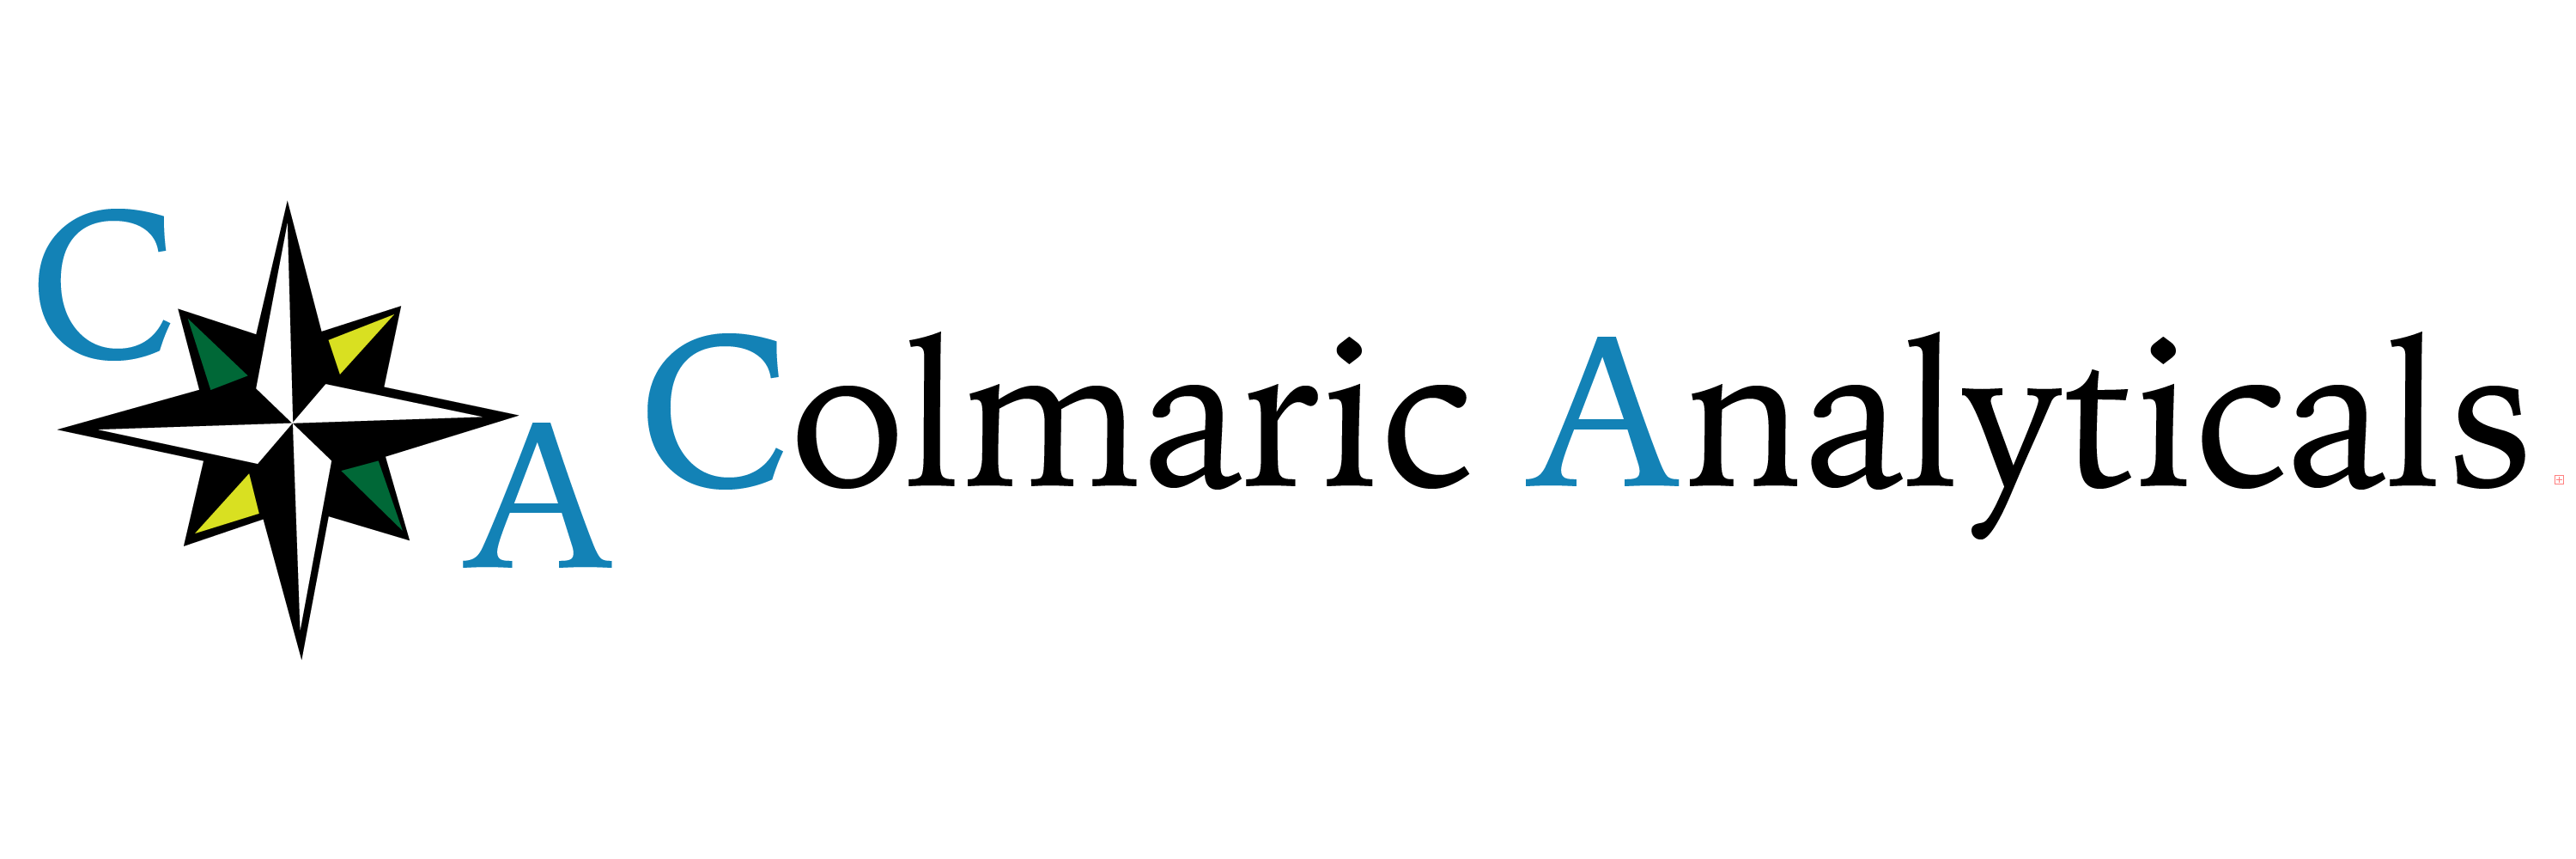 Colmaric Analyticals